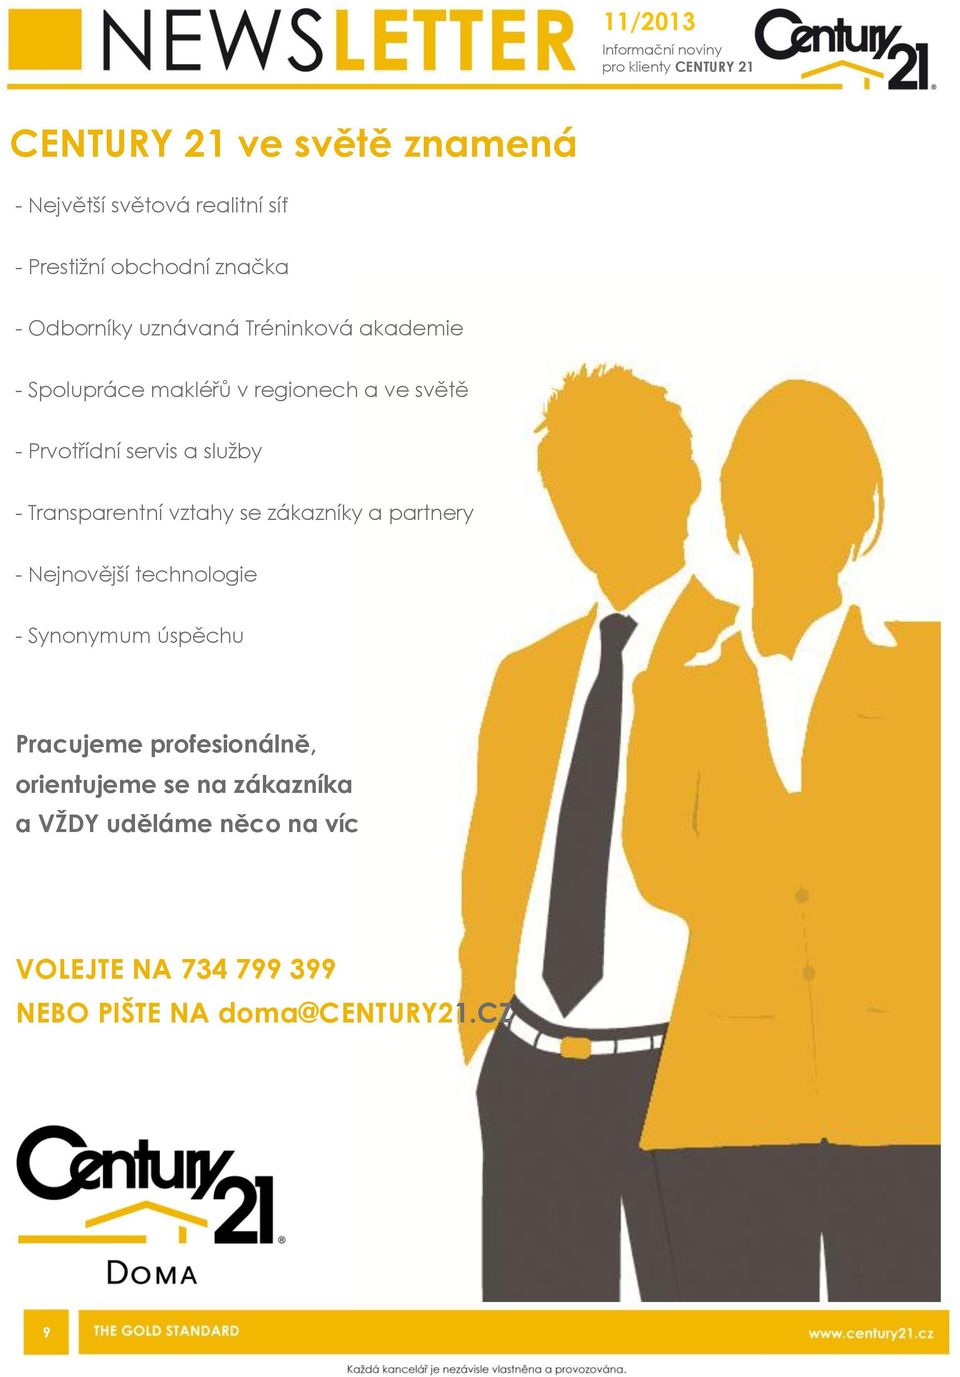 Prvotřídní servis a sluţby - Transparentní vztahy se zákazníky a partnery - Nejnovější technologie - Synonymum úspěchu